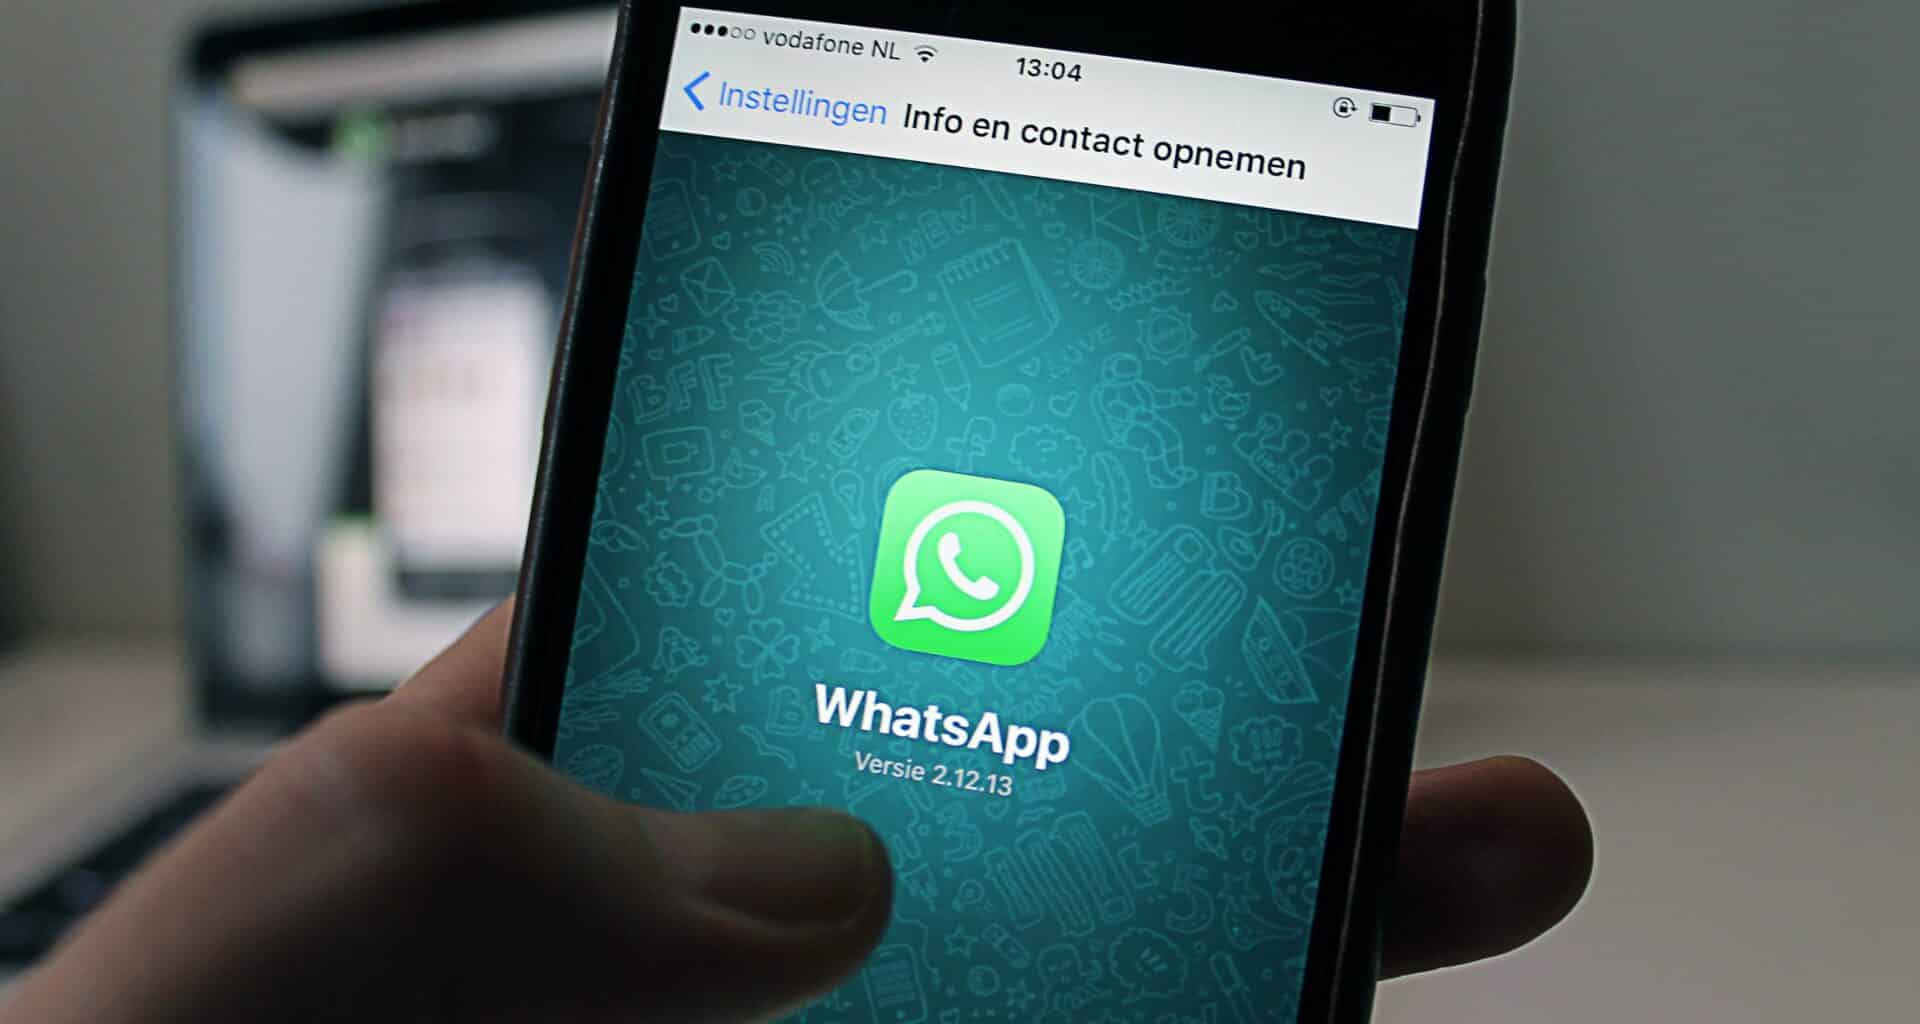 Mão segura celular que mostra ícone do WhatsApp na tela